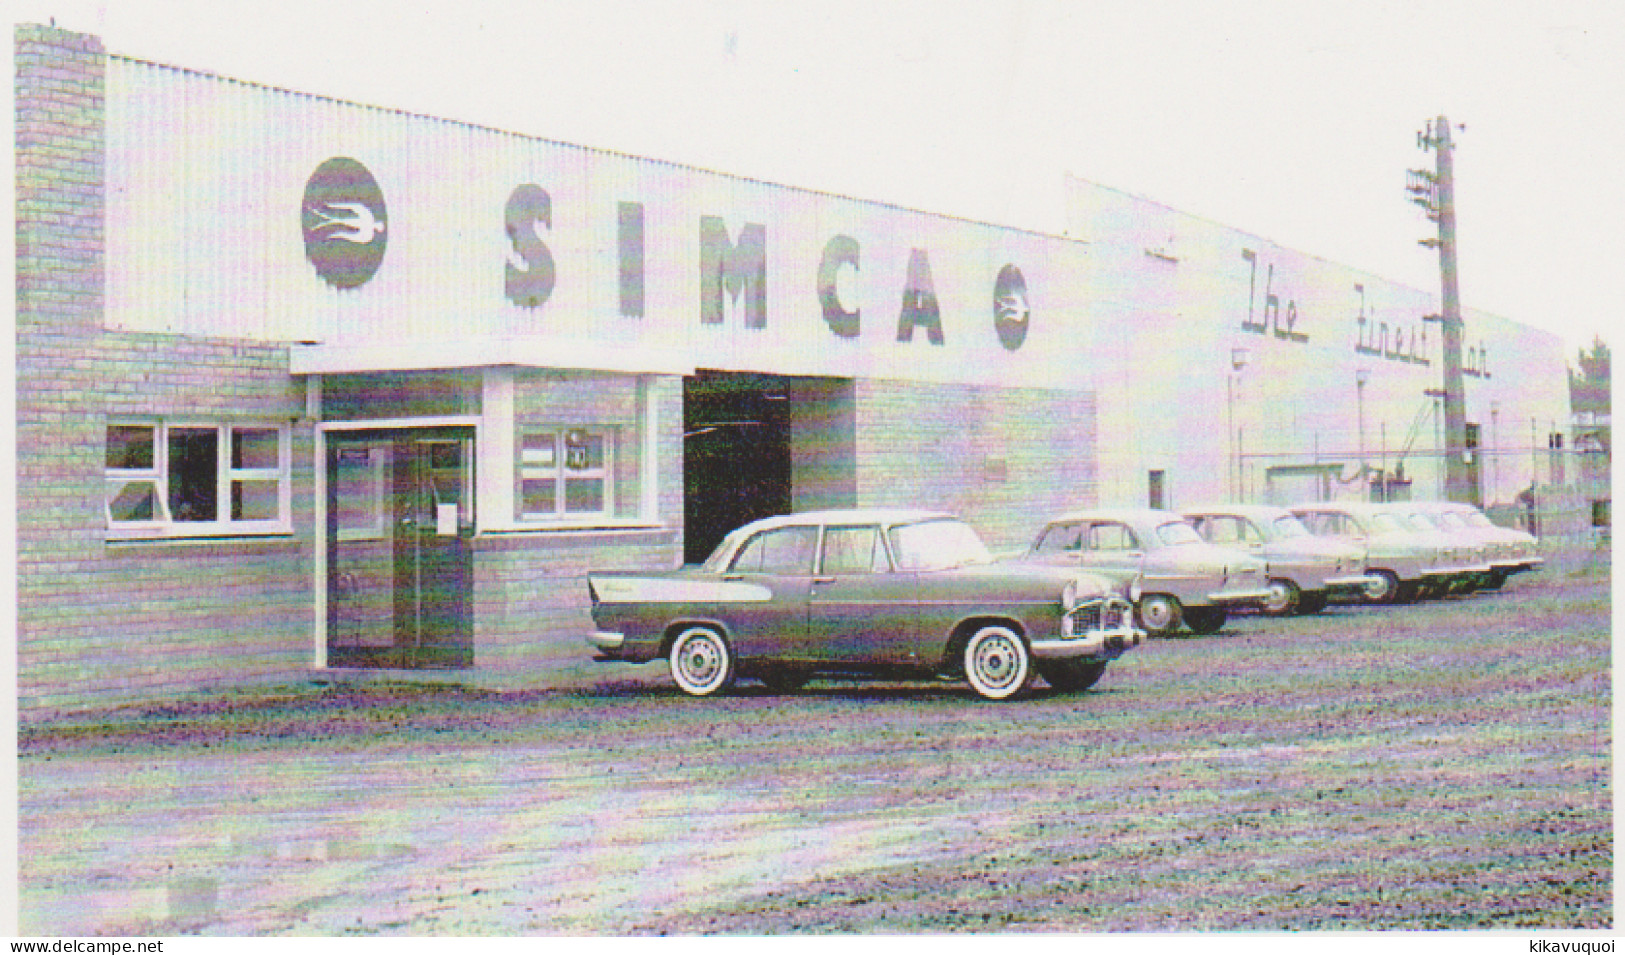 SIMCA GARAGE 1961 - CARTE POSTALE 10X15 CM NEUF - Turismo